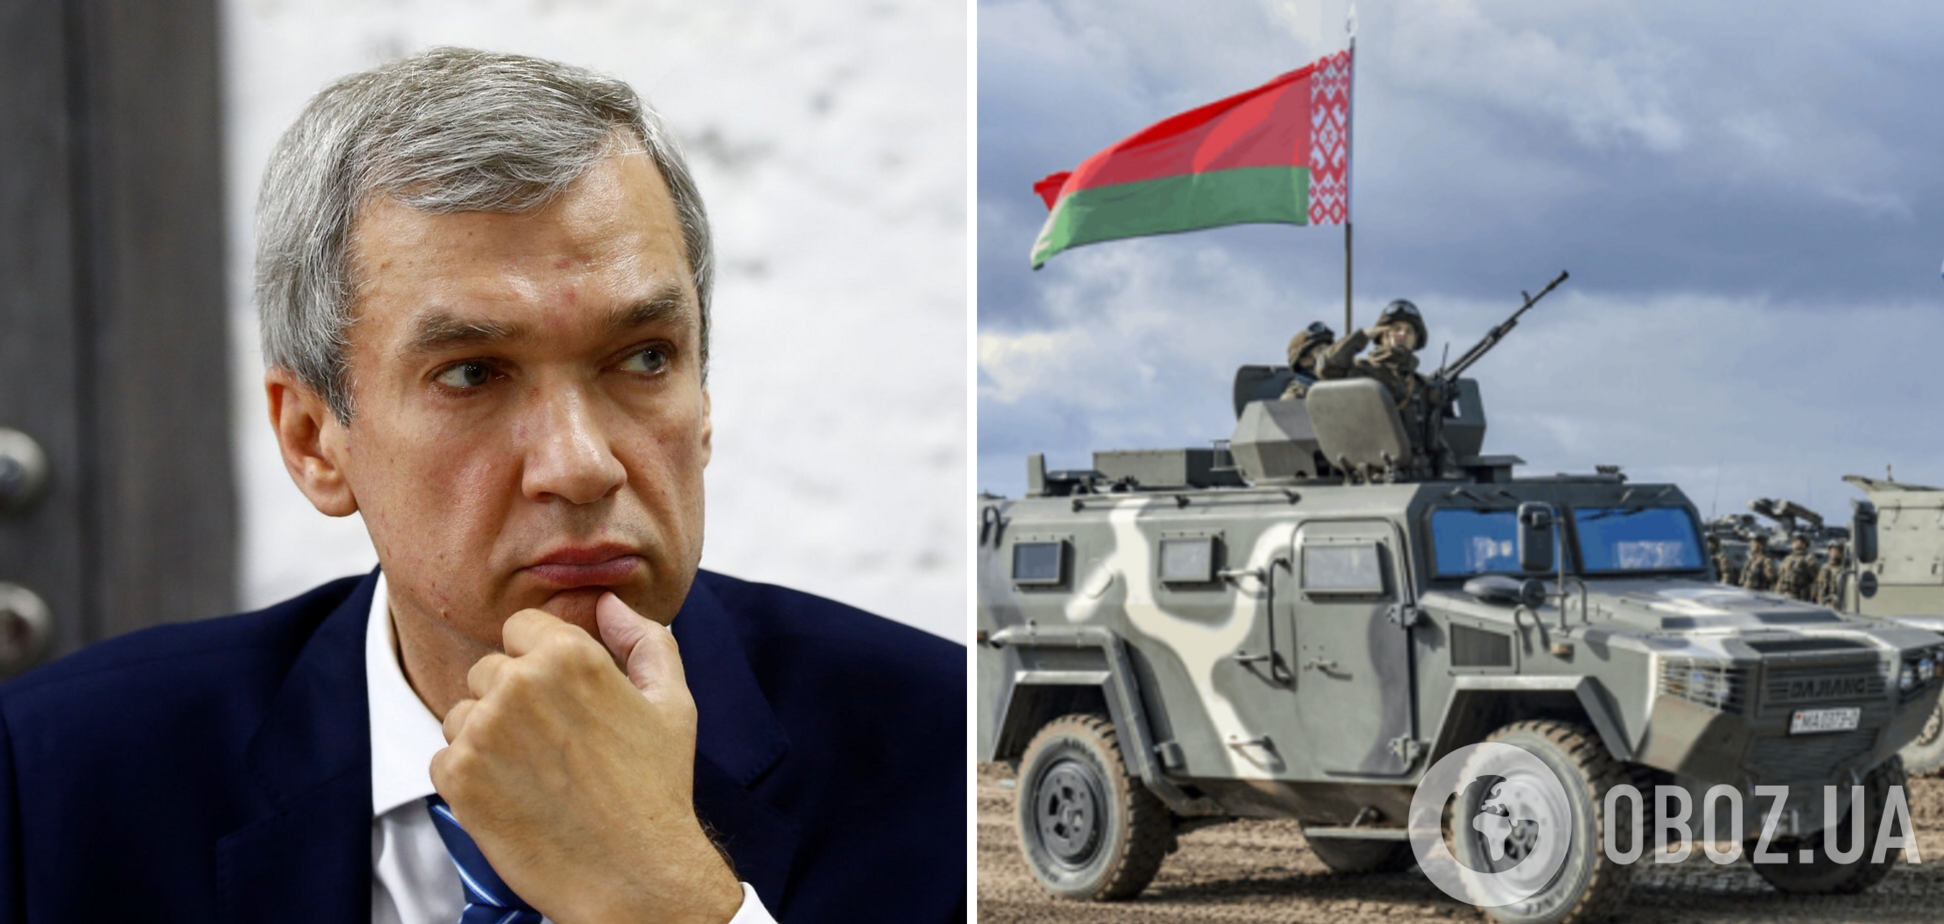 Беларусь может начать вторжение в Украину, 'прикрывшись' провокацией на границе, – беларусский оппозиционер